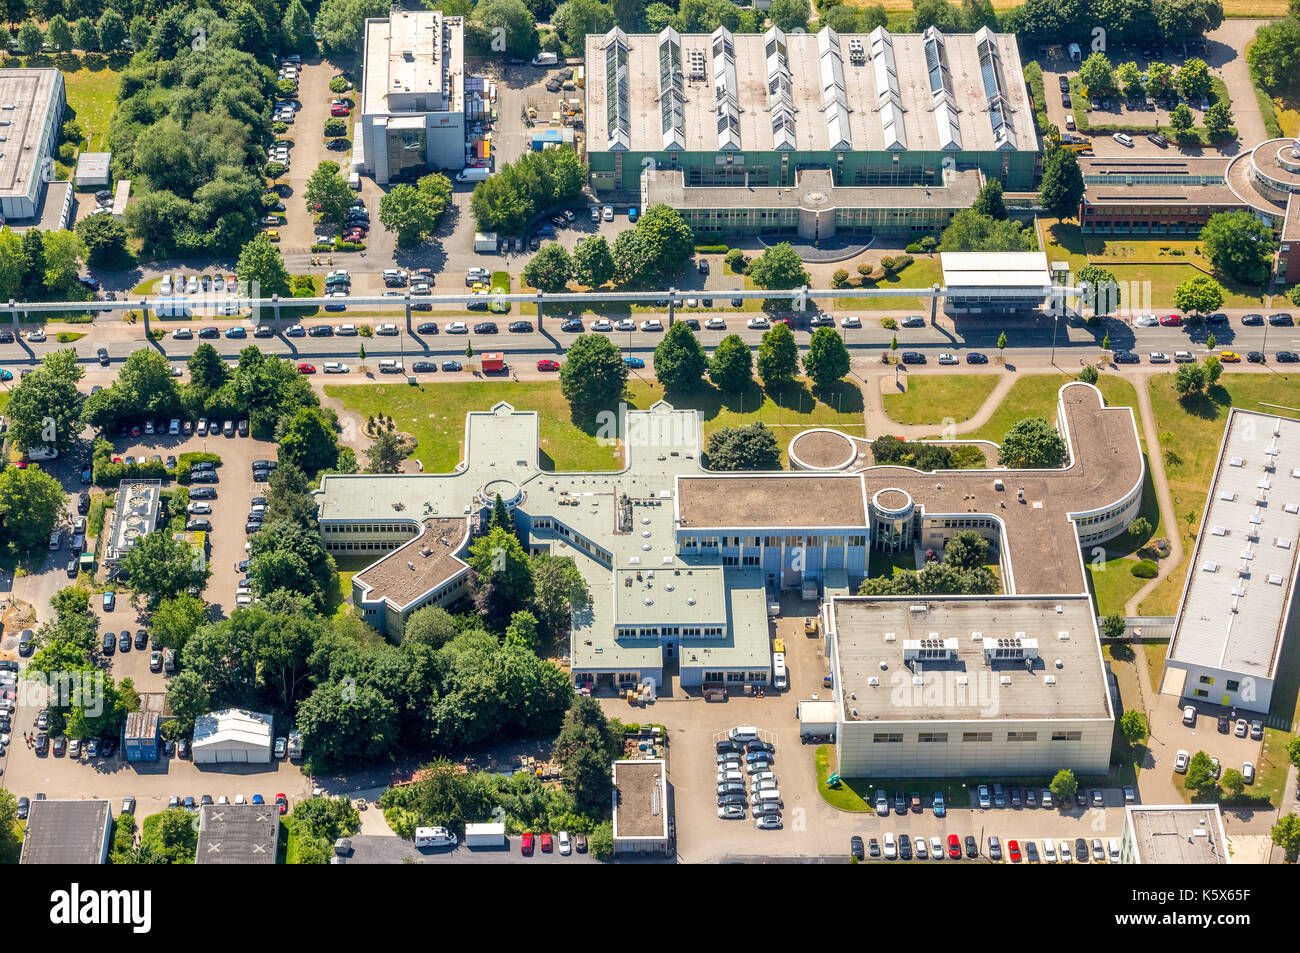 TechnologieParkDortmund sur le campus de l'Université de Dortmund, Dortmund, région de la Ruhr, Rhénanie-du-Nord-Westphalie, Allemagne Dortmund, Europe, vie aérienne Banque D'Images